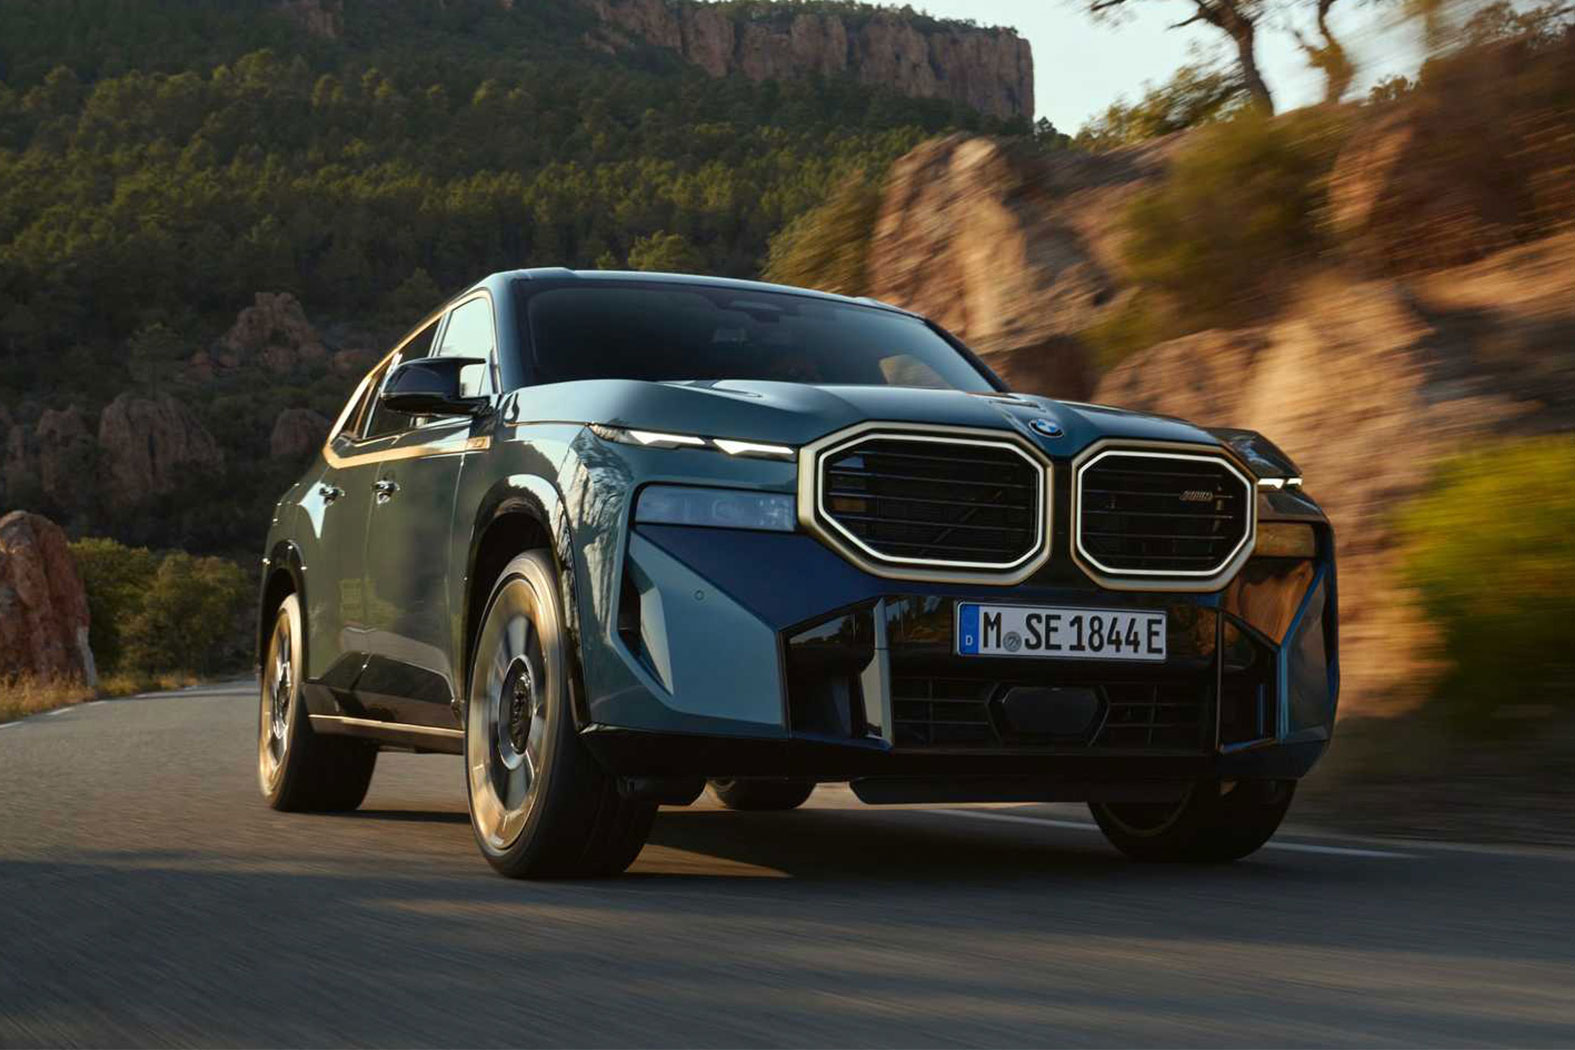 เปิดตัว All-New BMW XM SUV คันใหม่ที่มาพร้อมกับระบบขับเคลื่อนไฟฟ้า